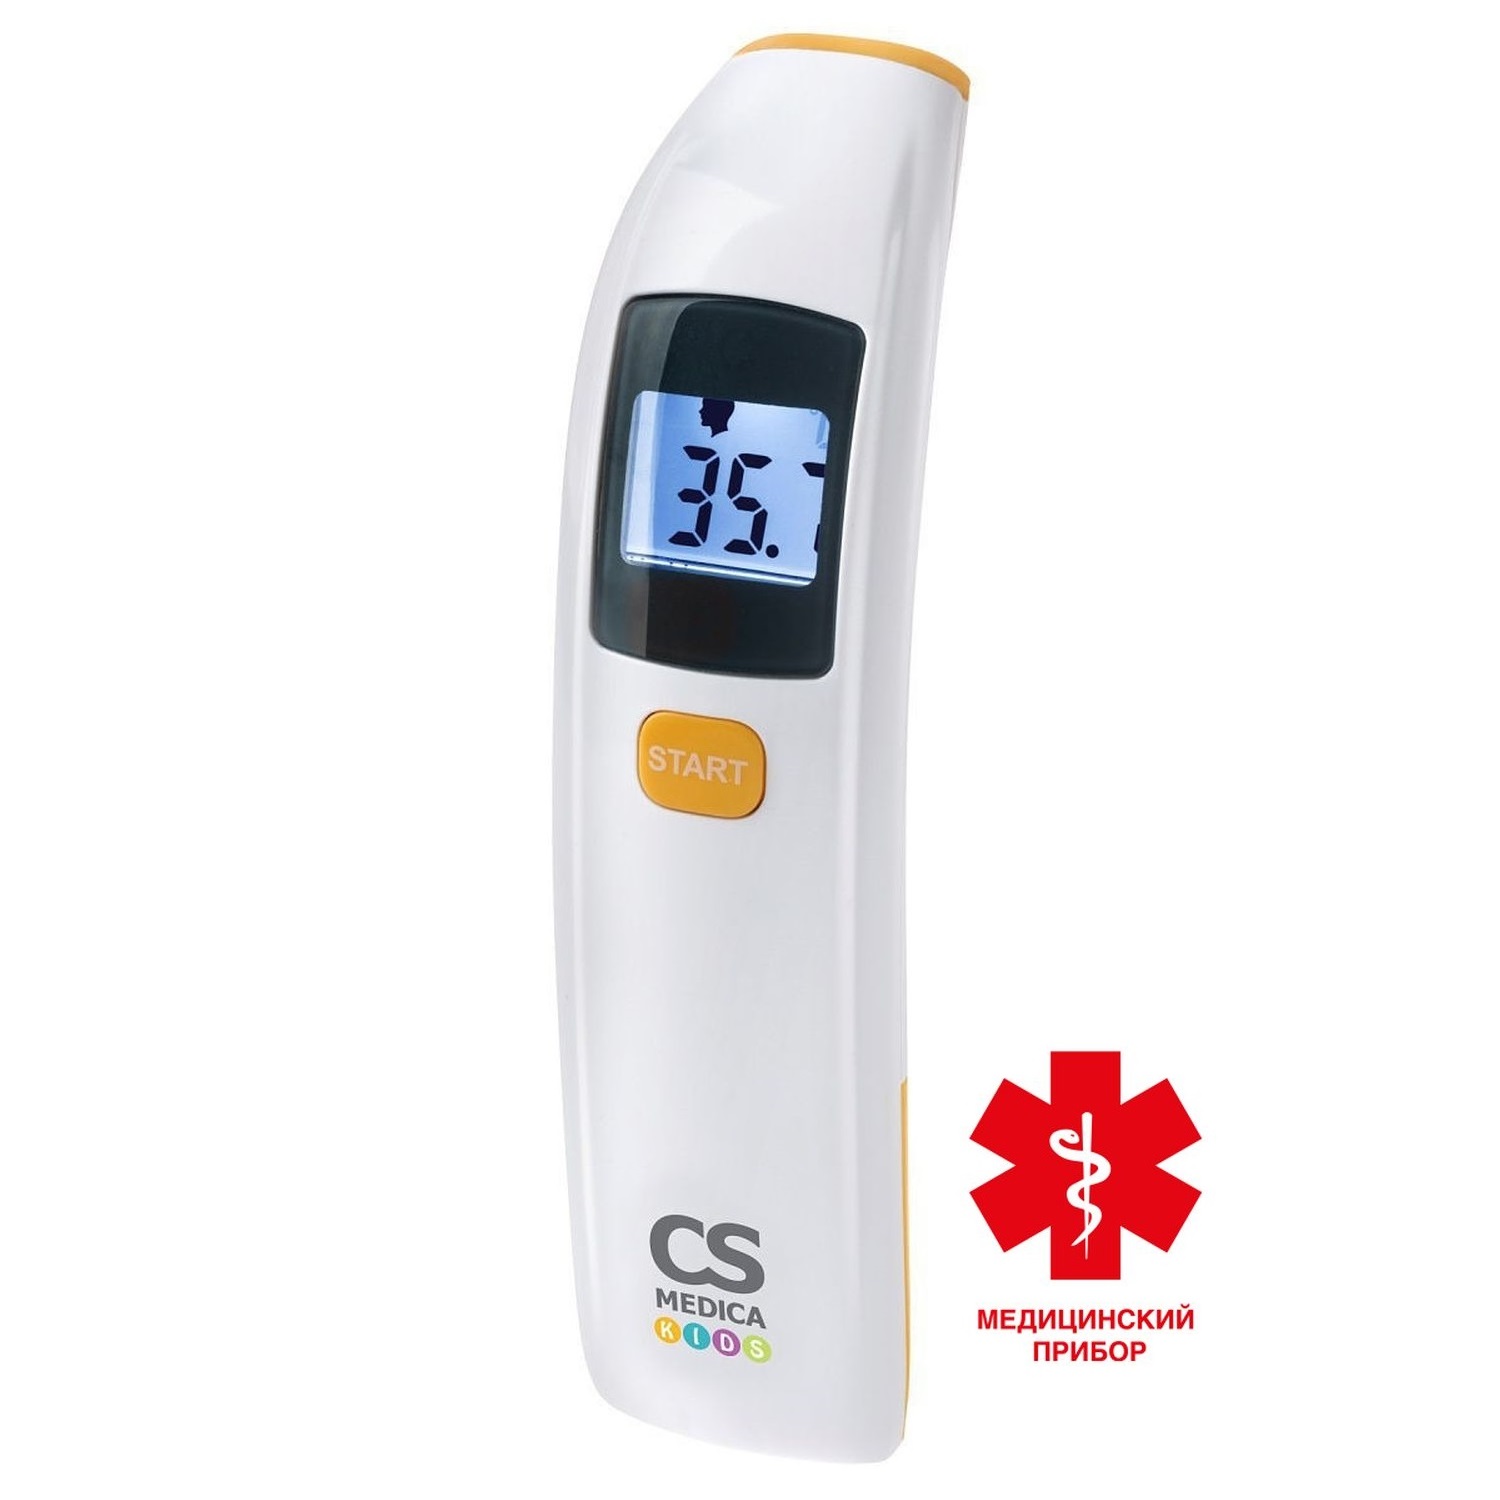 СиЭс Медика термометр электронный медицинский бесконтактный CS-88 бесконтактный цифровой пирометр термометр квт kt 650a proline 79137 точечный указатель вес 0 1 кг